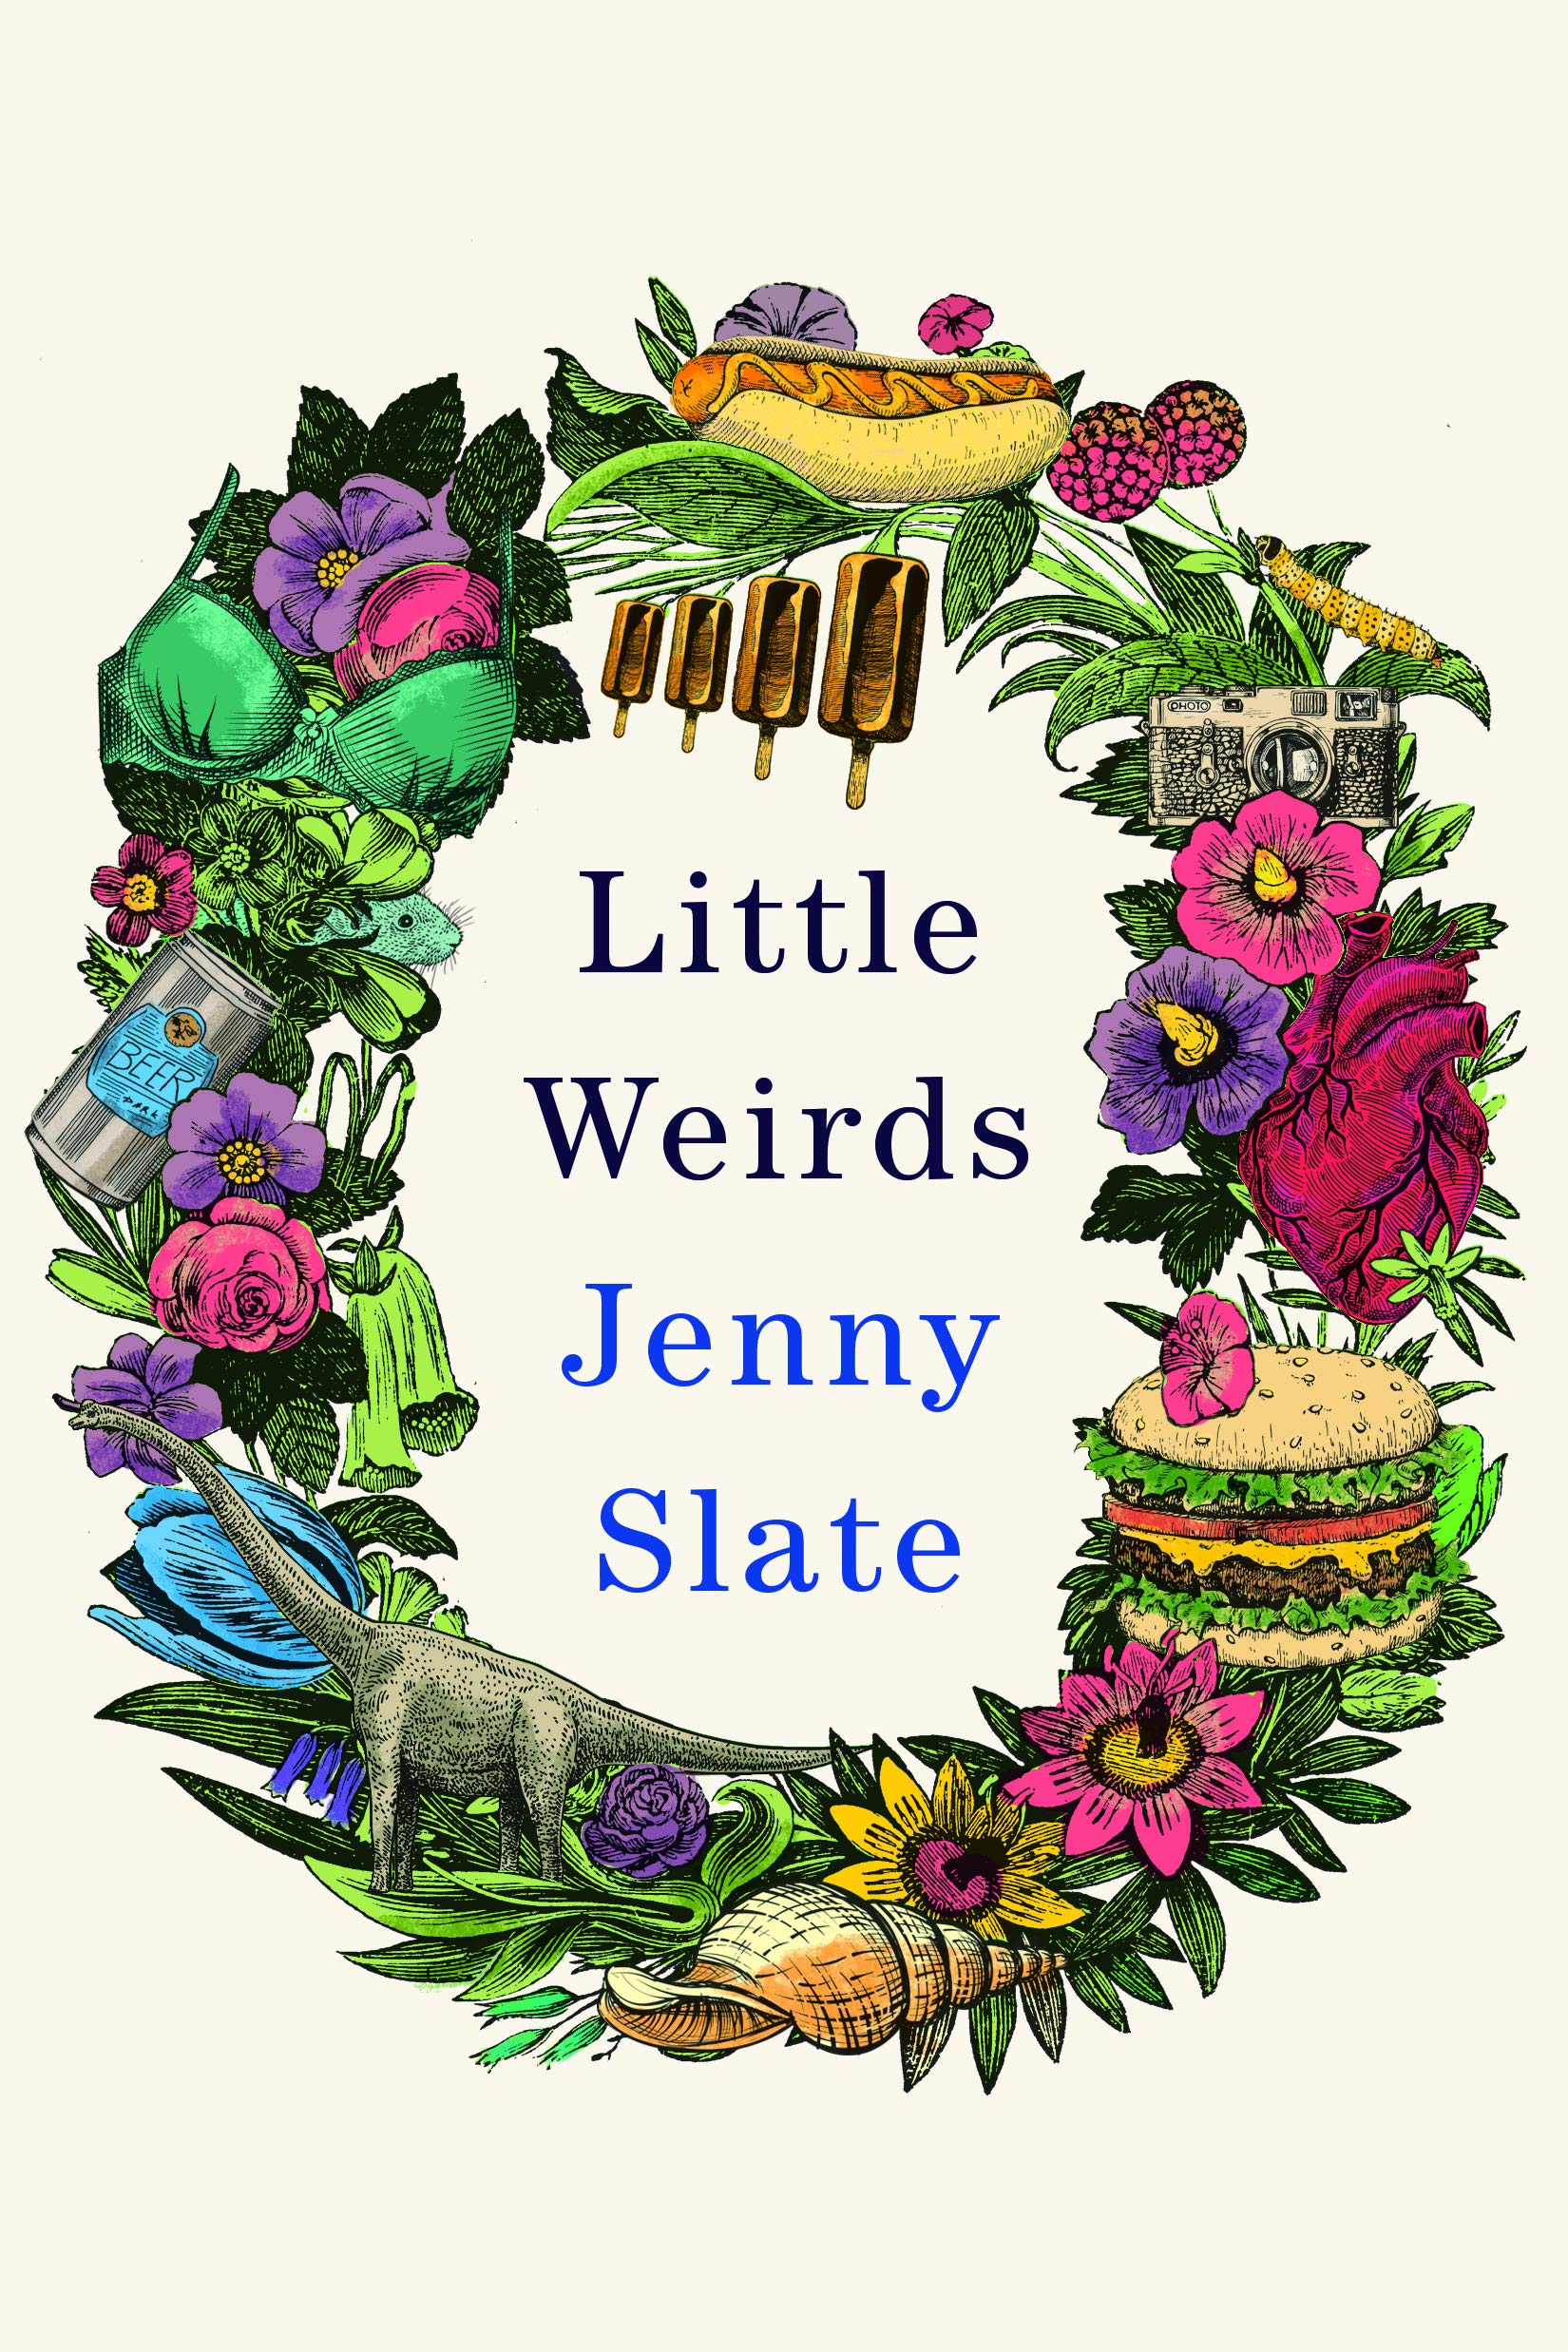 "Little Weirds" by Jenny Slate